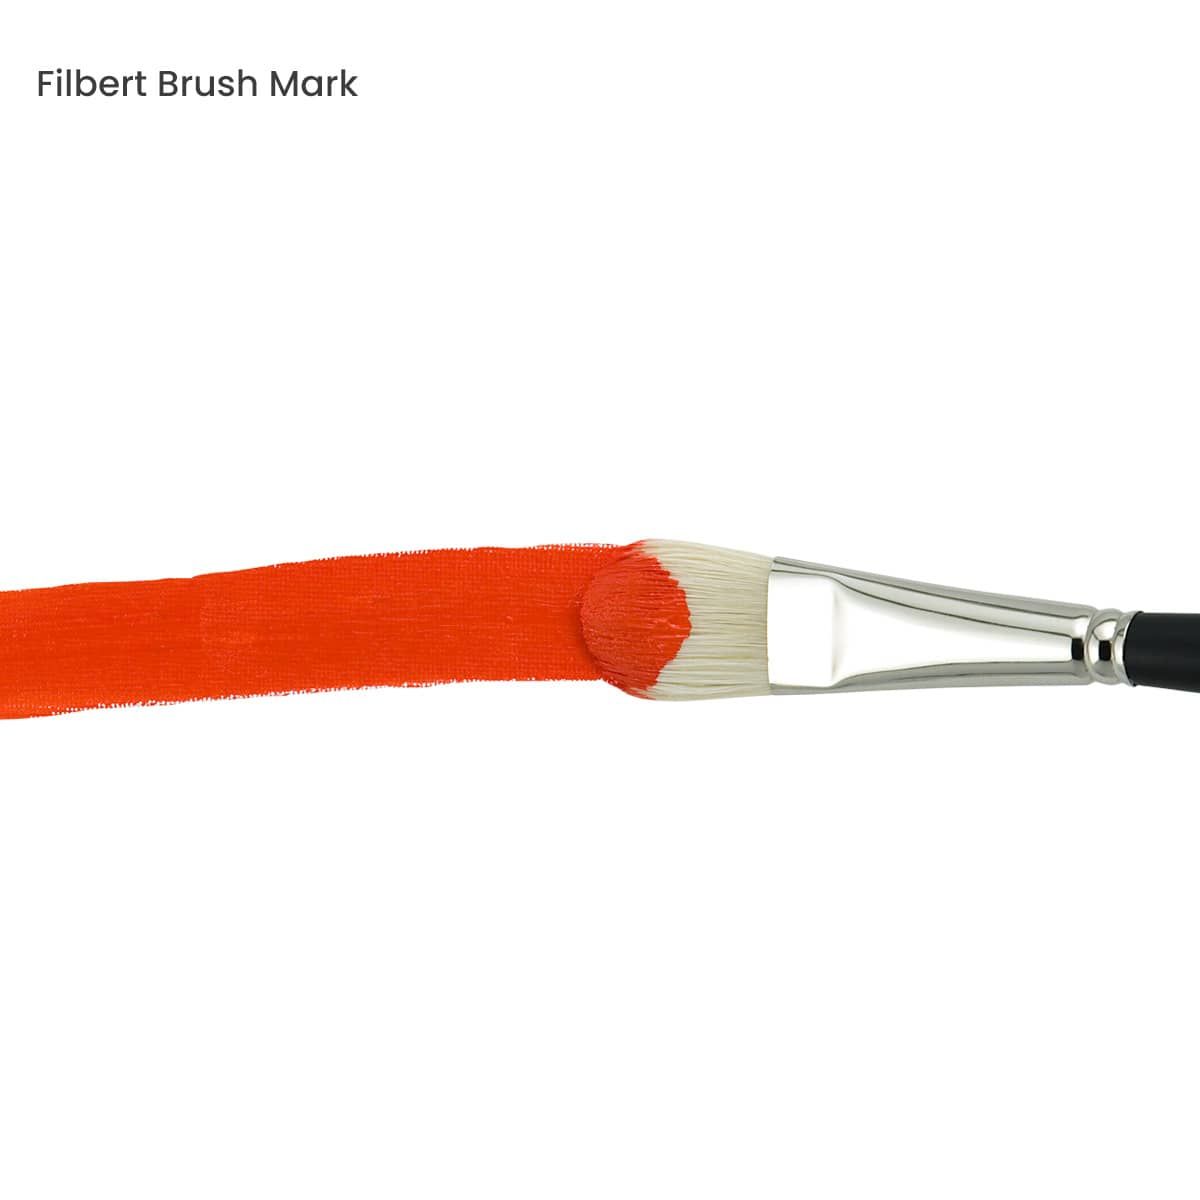 Filbert Brush Mark